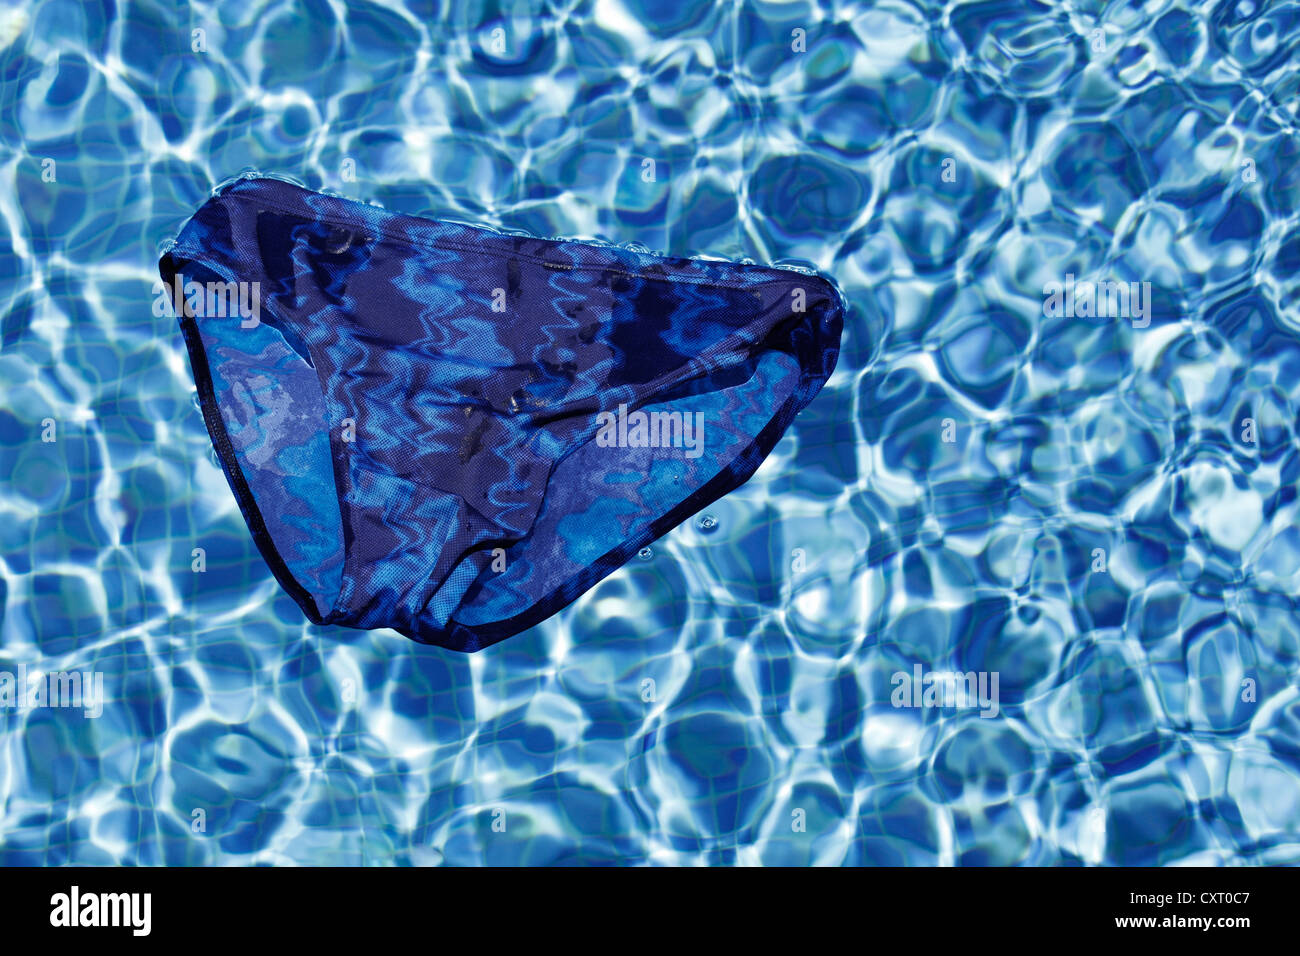 Maillot de bain bleu flottant à la surface d'une piscine extérieure, d'image symbolique pour les vacances ou les jours fériés Banque D'Images